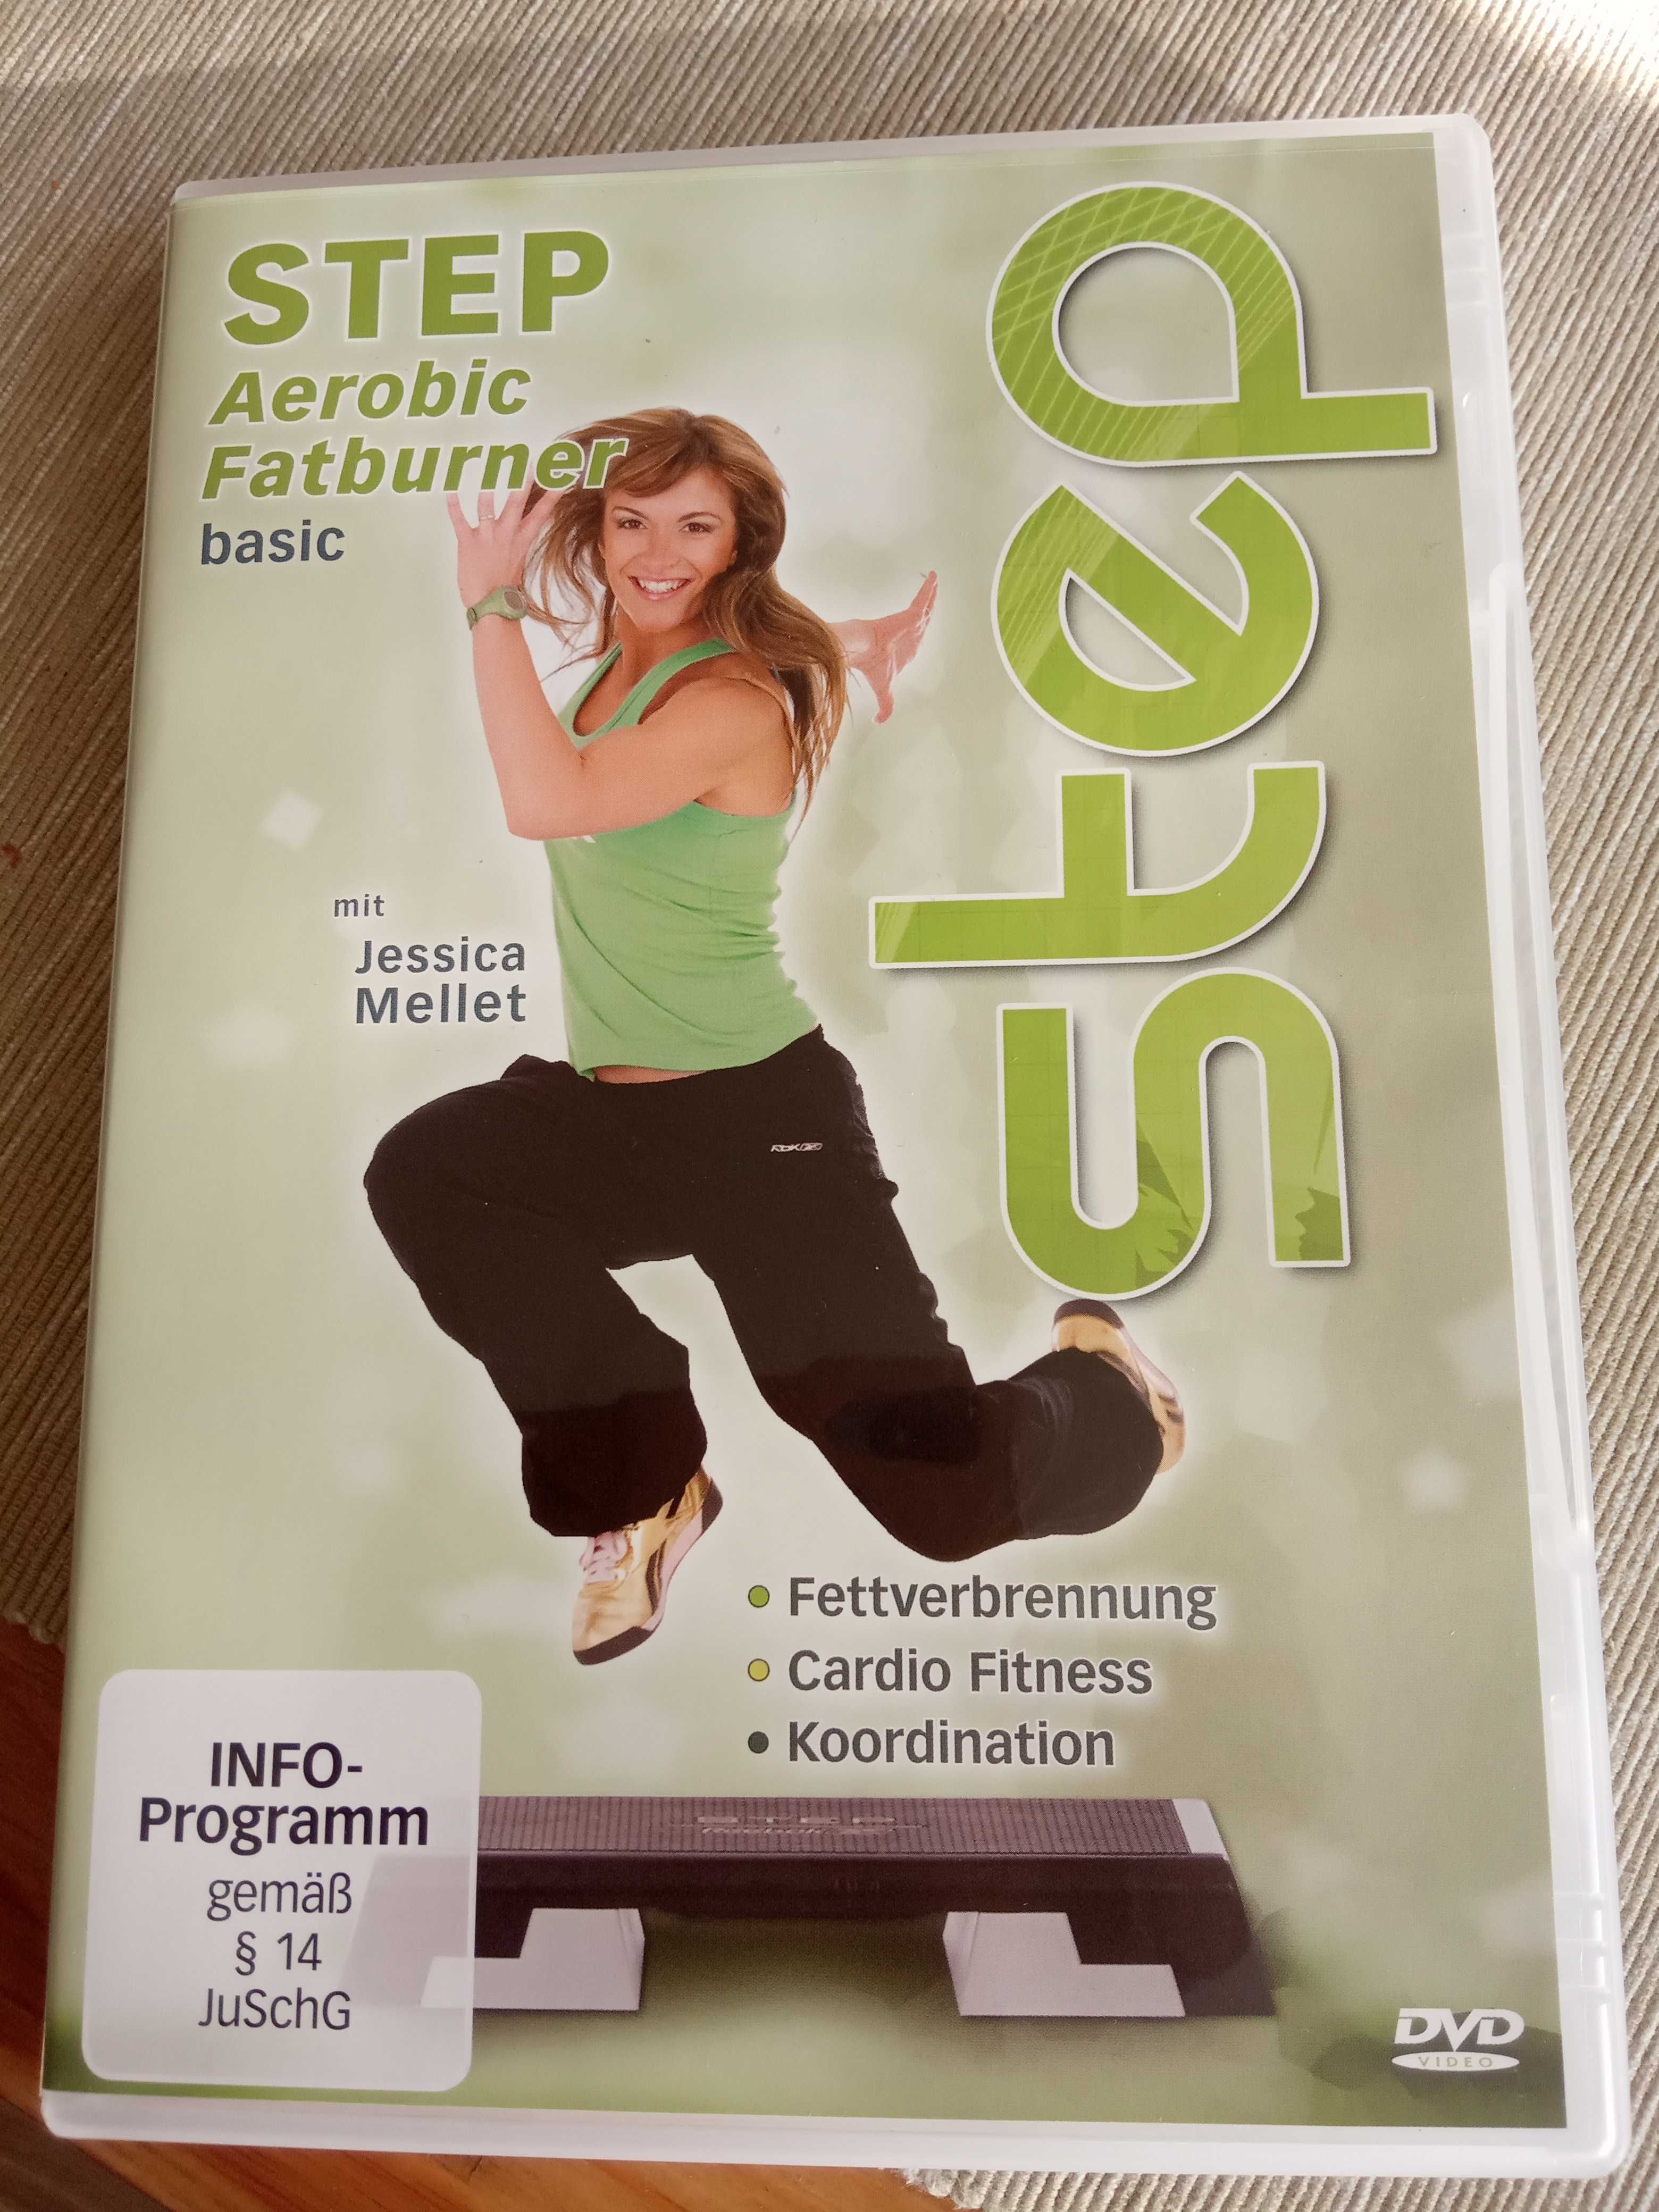 Podstawowy aerobowy spalacz tłuszczu, 1 płyta DVD, Jessica Mellet